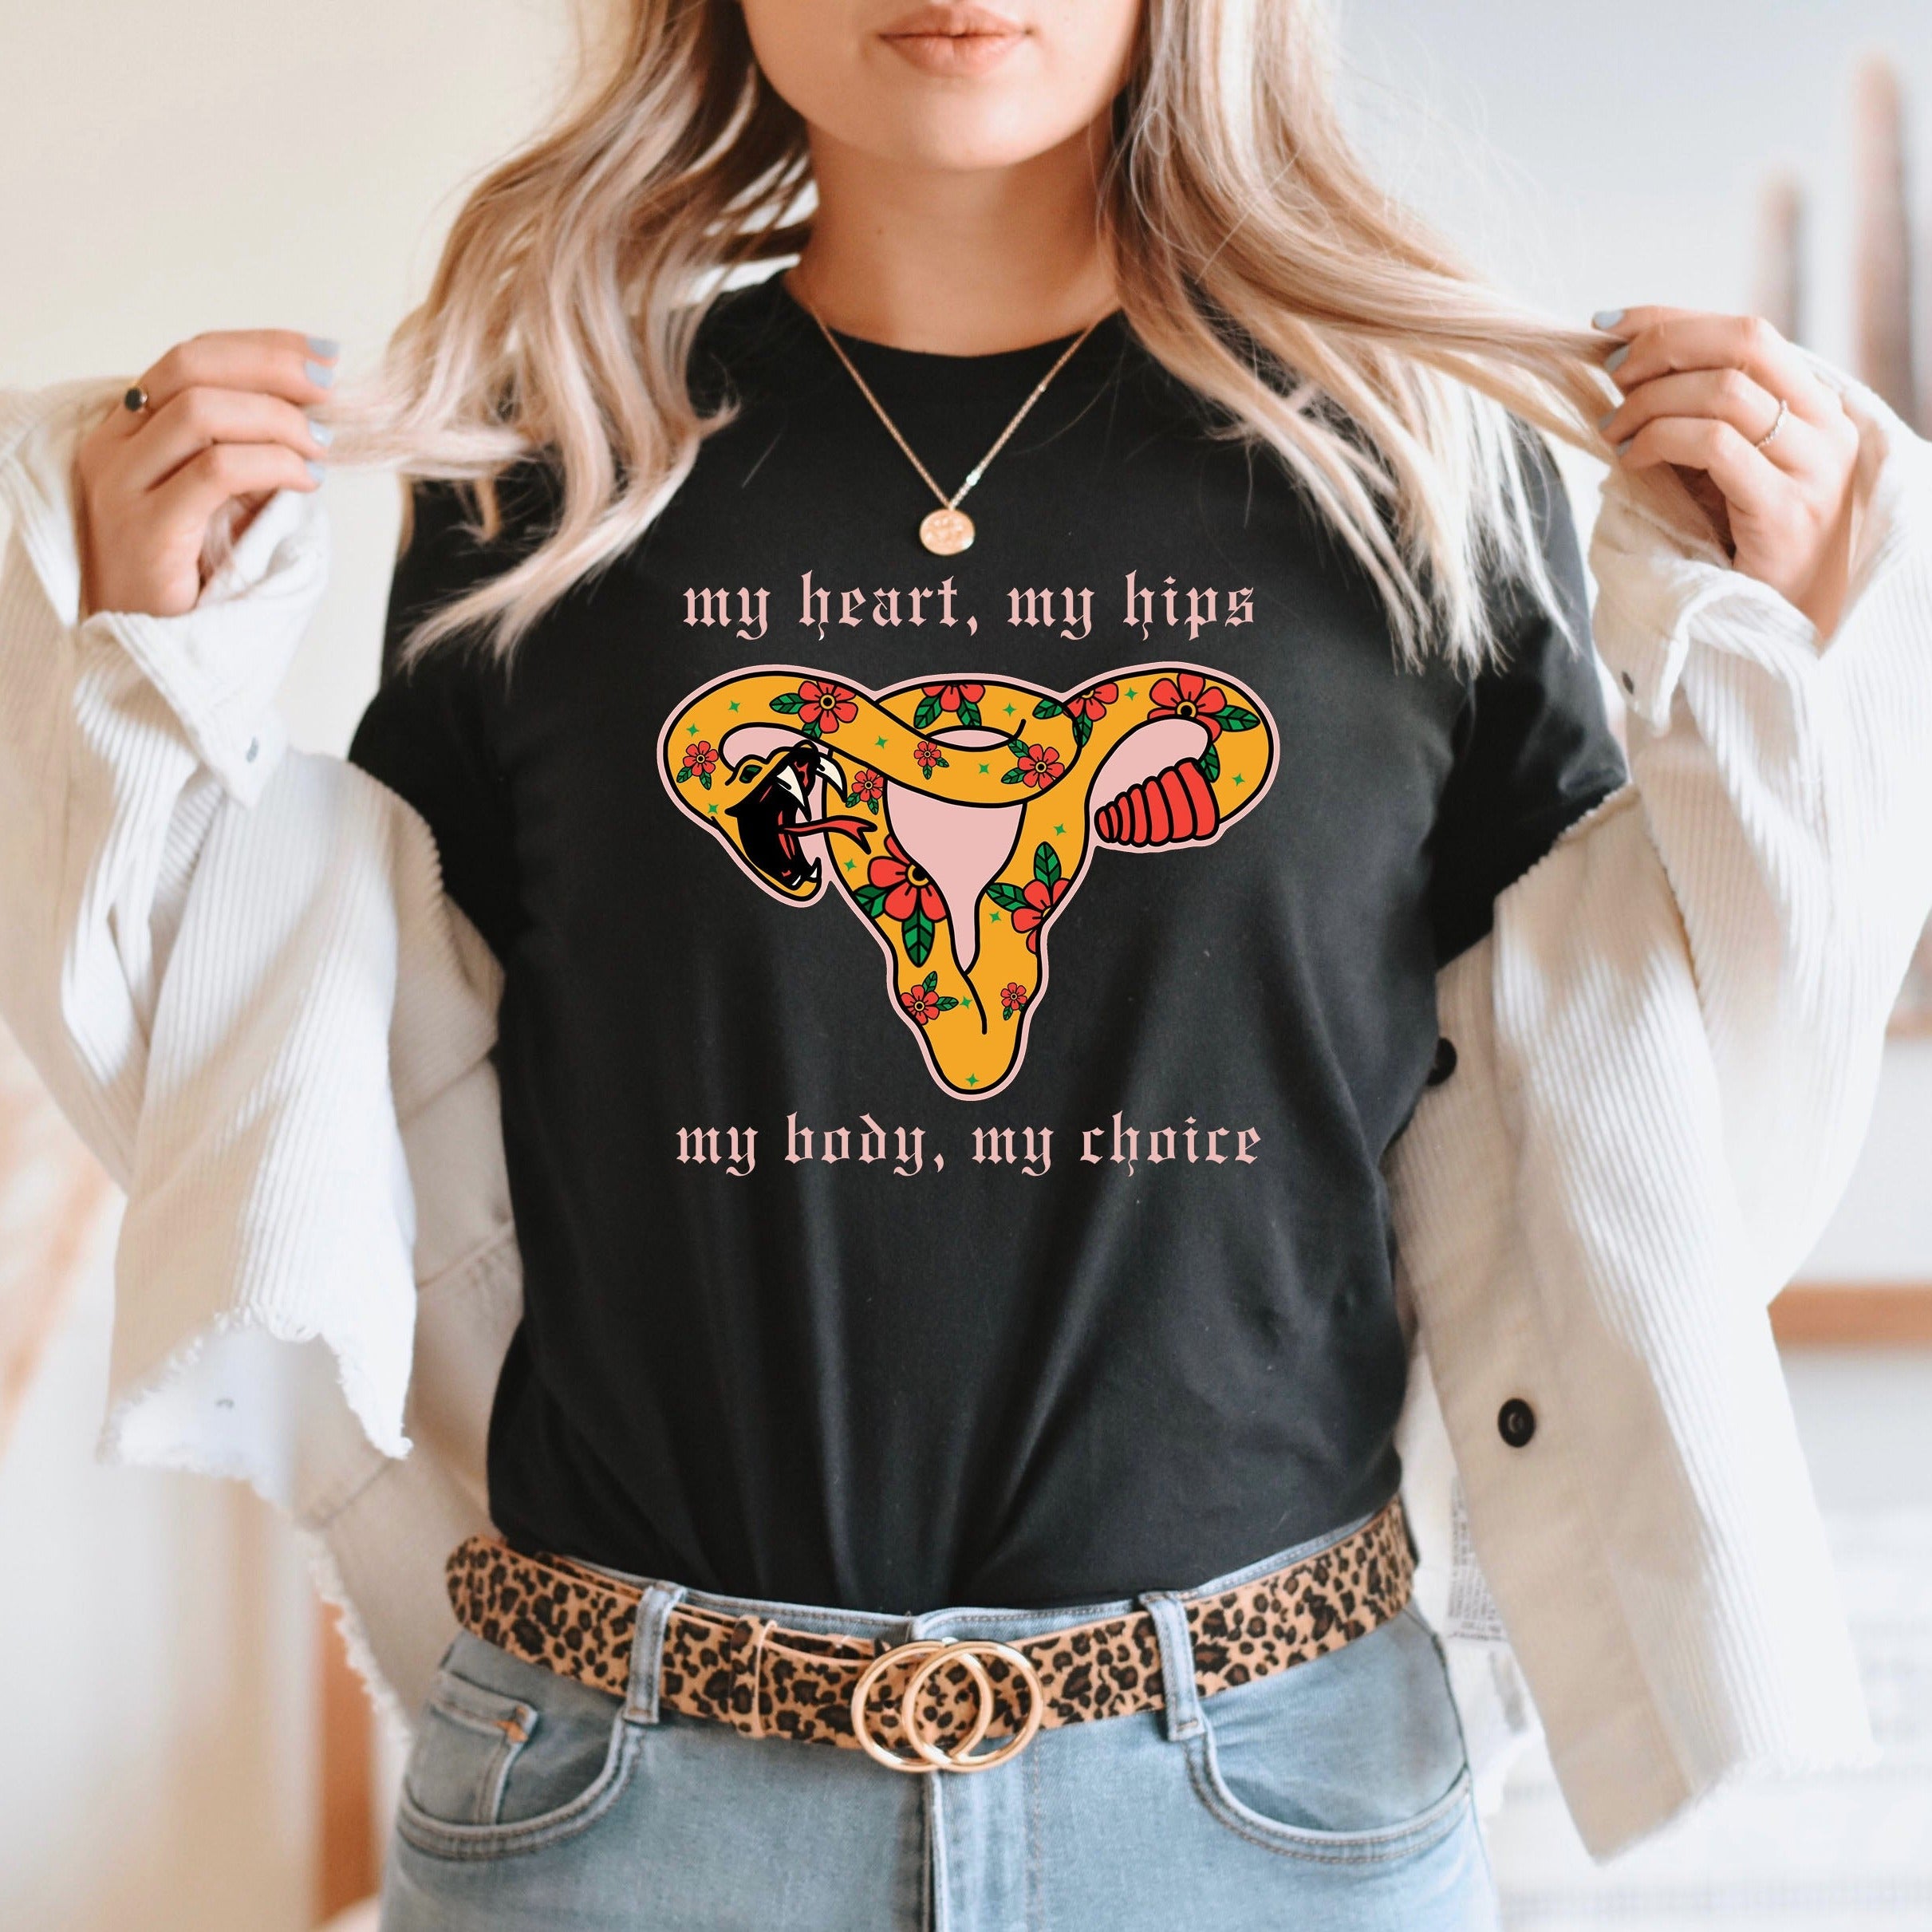 My Body My Choice (Flowers) -- Women's T-Shirt